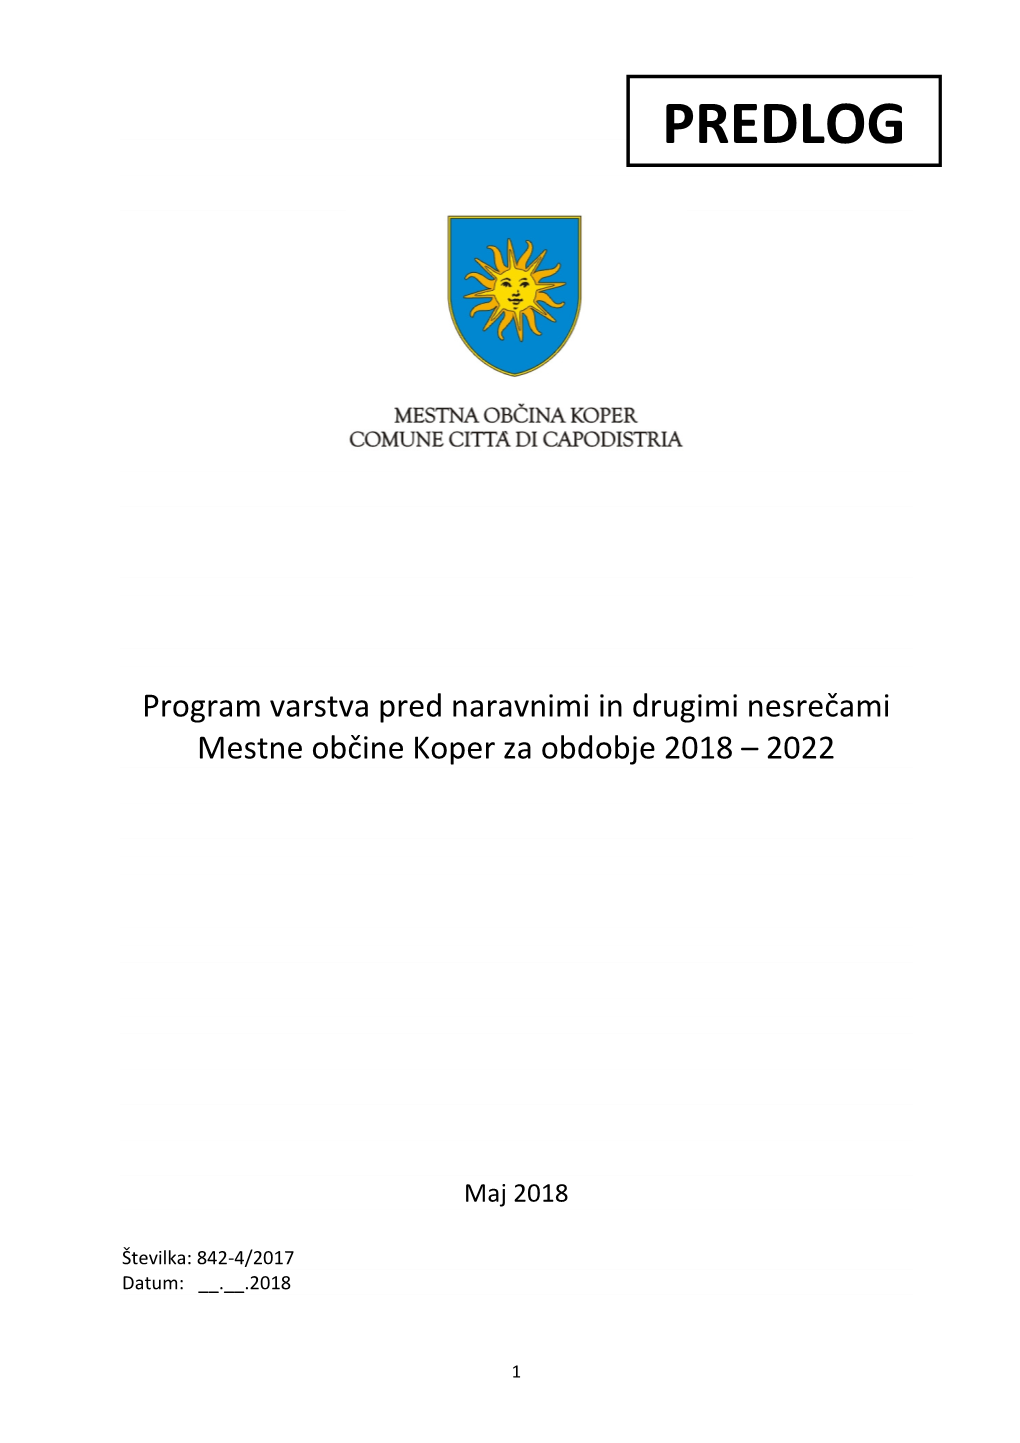 Predlogi Podani V Elaboratu O Organiziranosti in Opremljenosti Gasilskih Enot Za Območje Mestne Občine Koper Za Obdobje 2015 – 2020 (Protr D.O.O., Maj 2015)